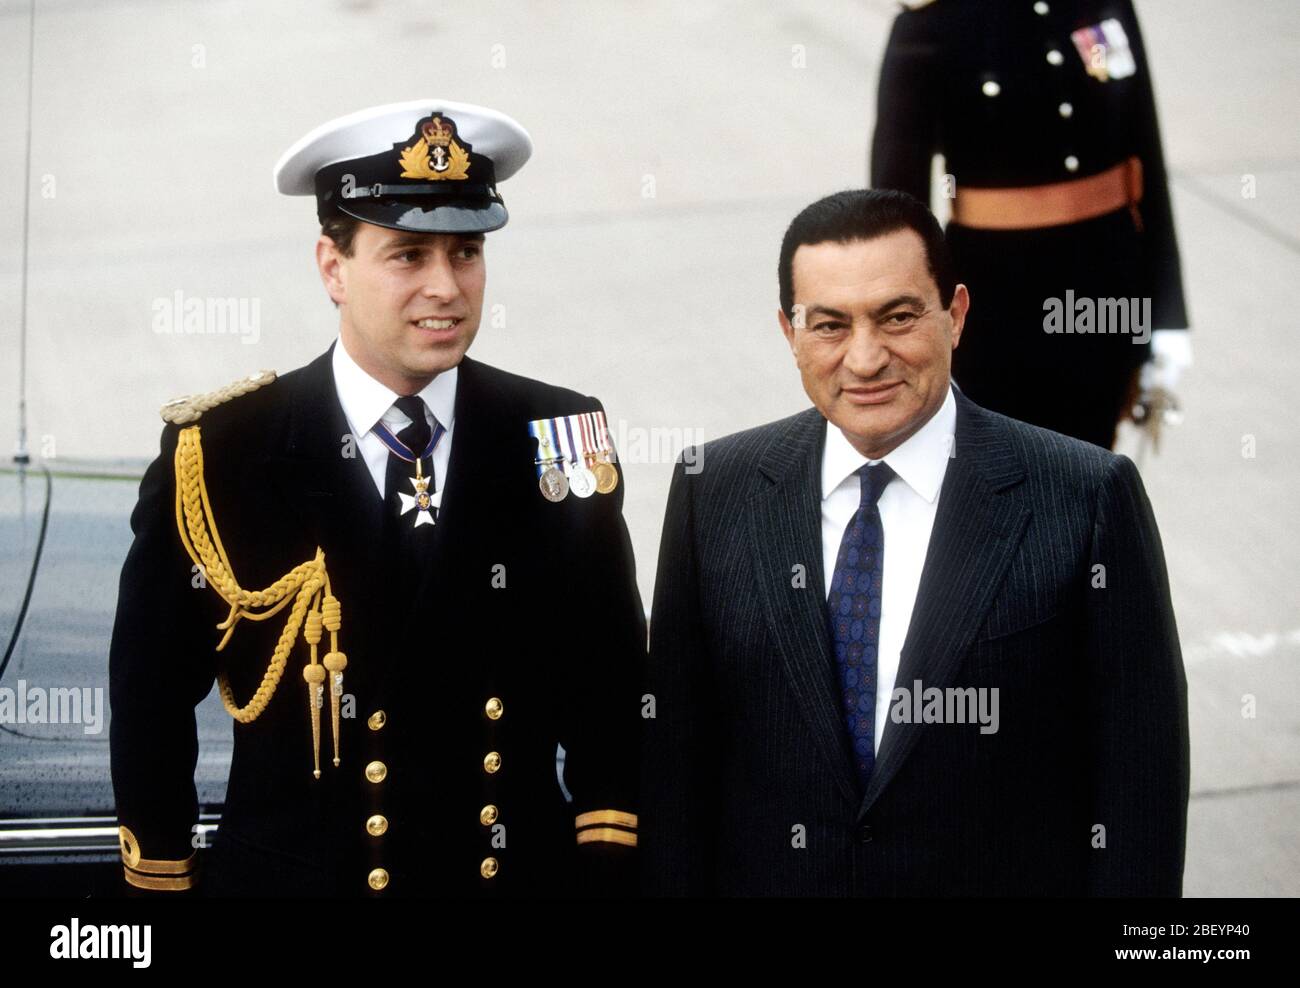 S.H. Prinz Andrew, Herzog von York, begrüßt Präsident Mubarak von Ägypten während seines Staatsbesuchs in Großbritannien Juli 1991 Stockfoto